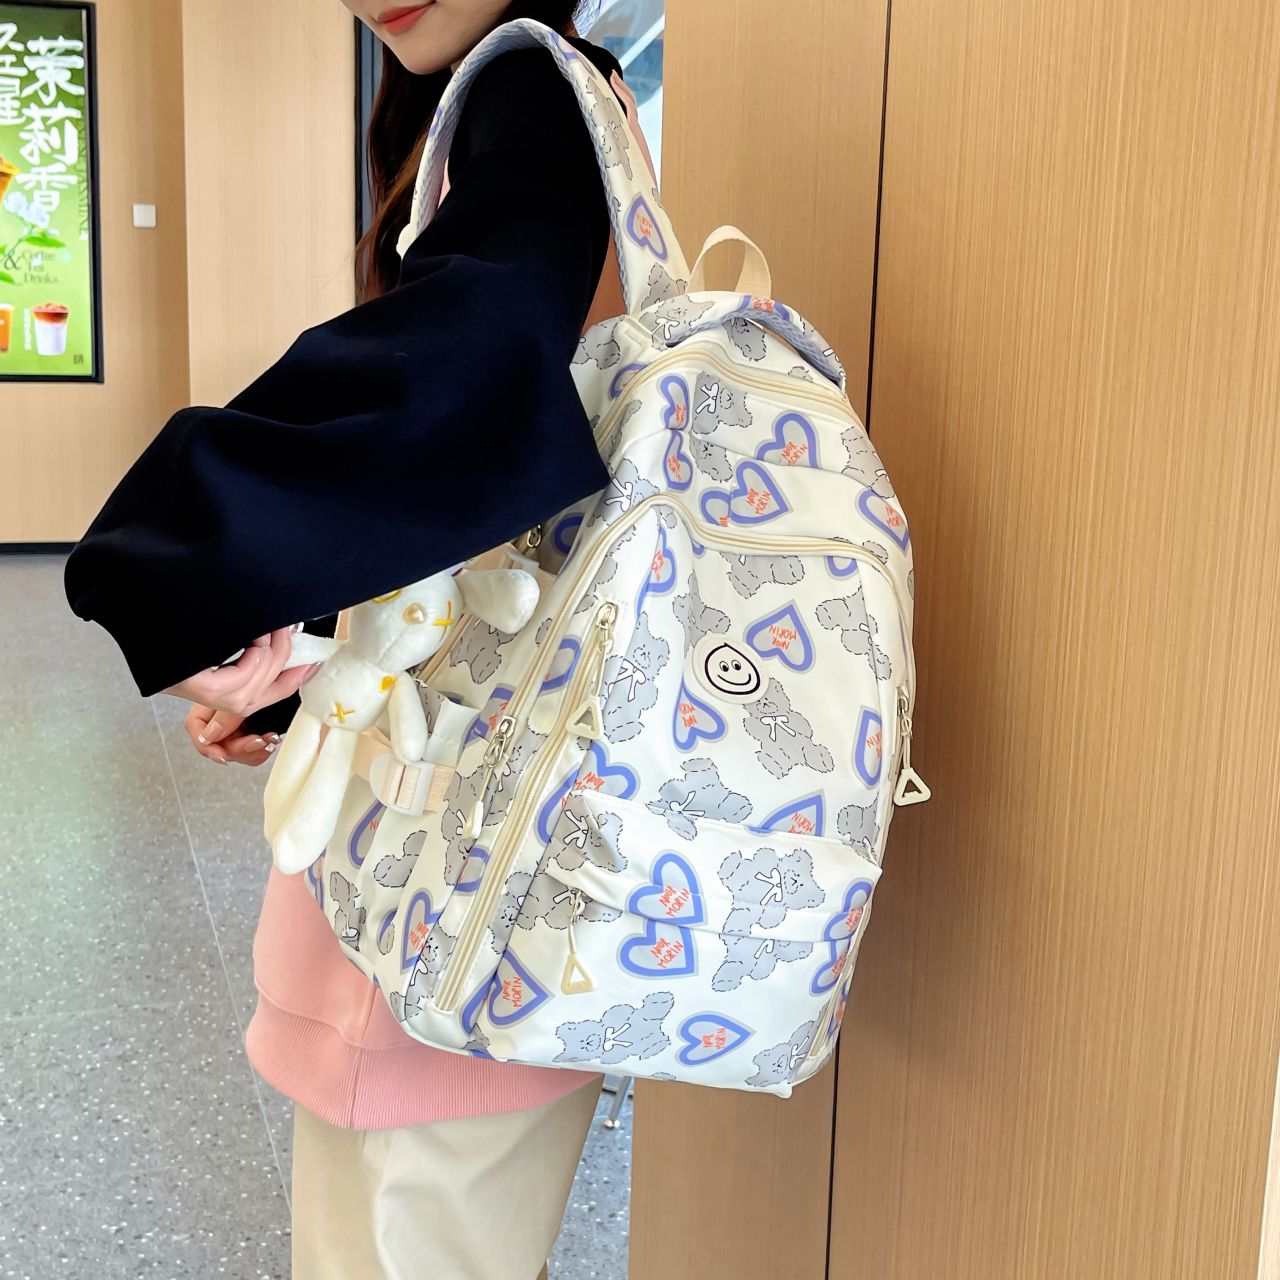 Girls' schoolbags, junior high school students' versatile primary school students' backpacks, cute new student backpacks, large capacity backpacks